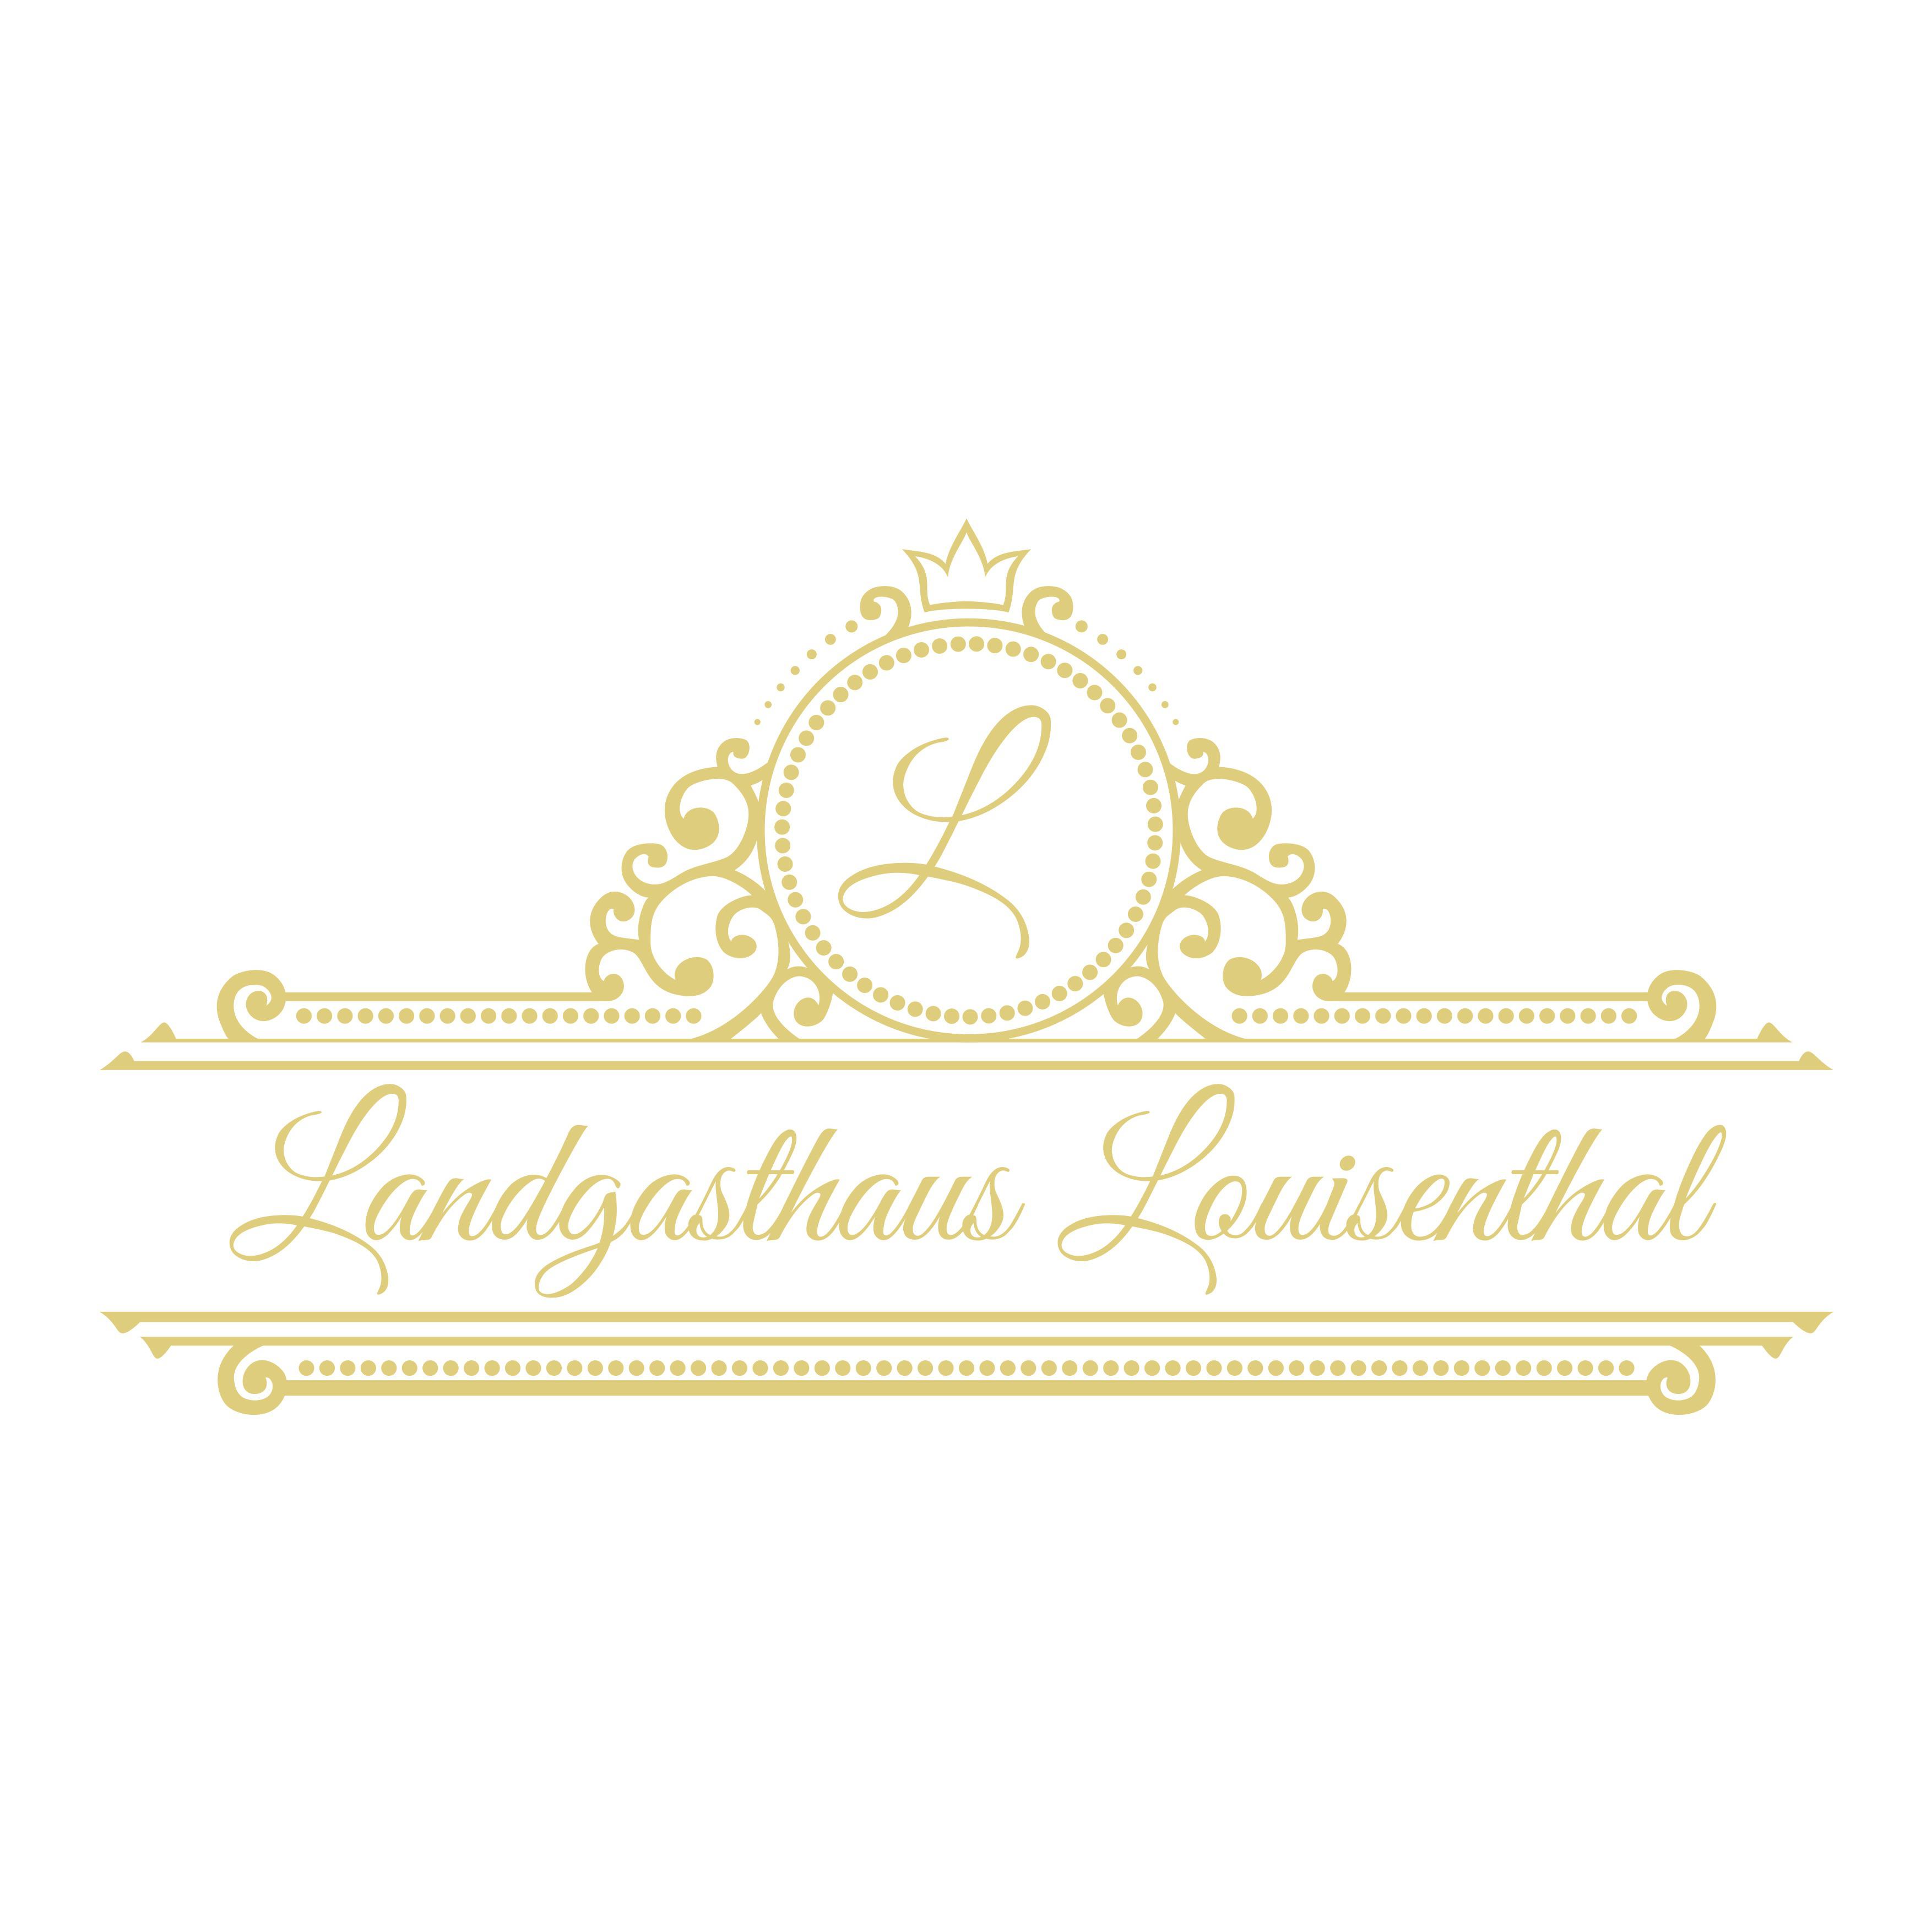 Profilbild von Landgasthaus Louisenthal Inh. Manuel Hoschka